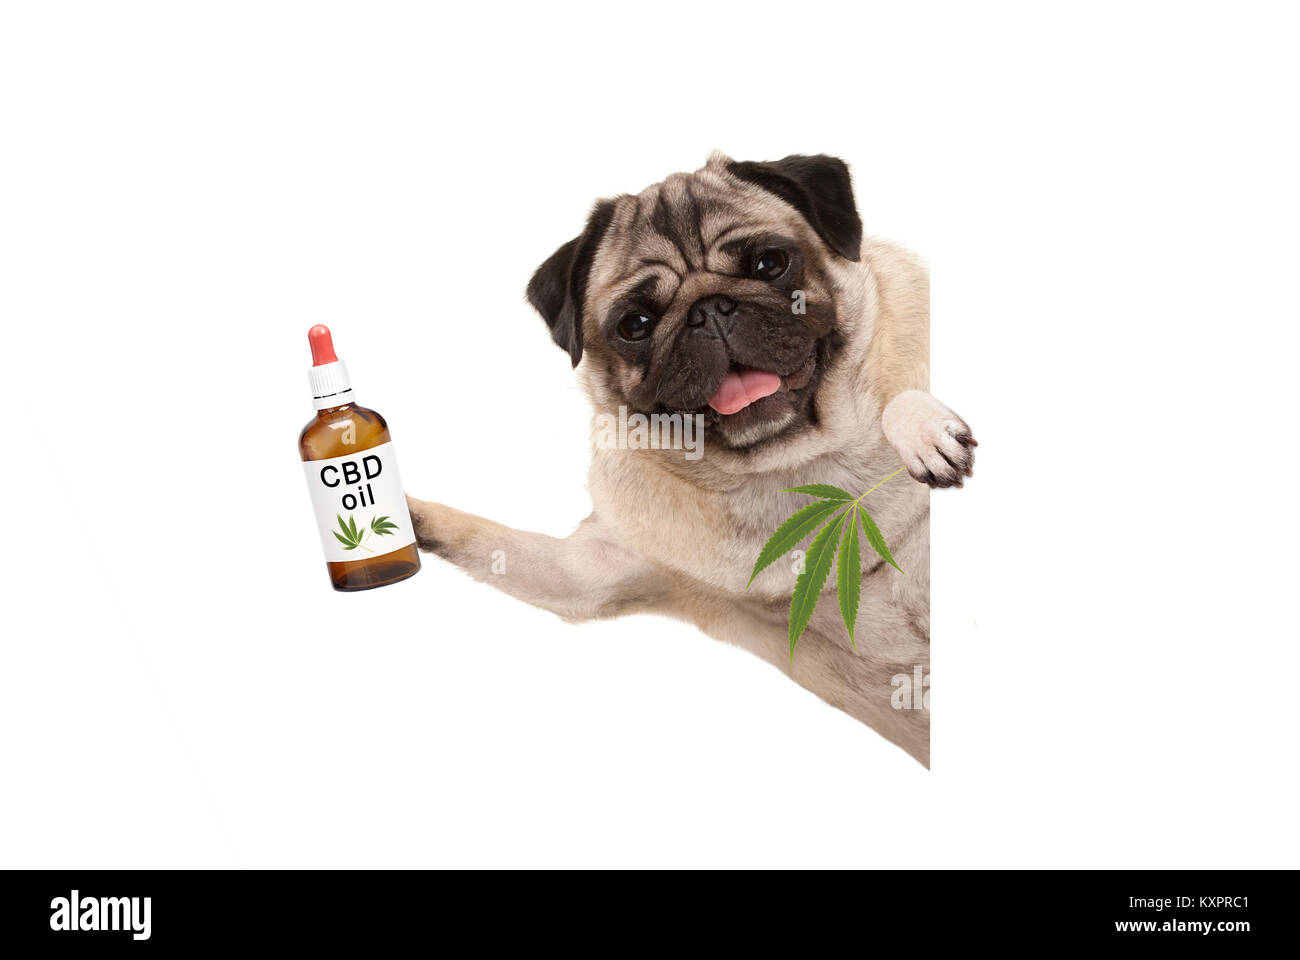 Carino sorridente pug cucciolo di cane tenendo in mano una bottiglia di olio di CBD e marijuana la canapa foglia, isolati su sfondo bianco Foto Stock